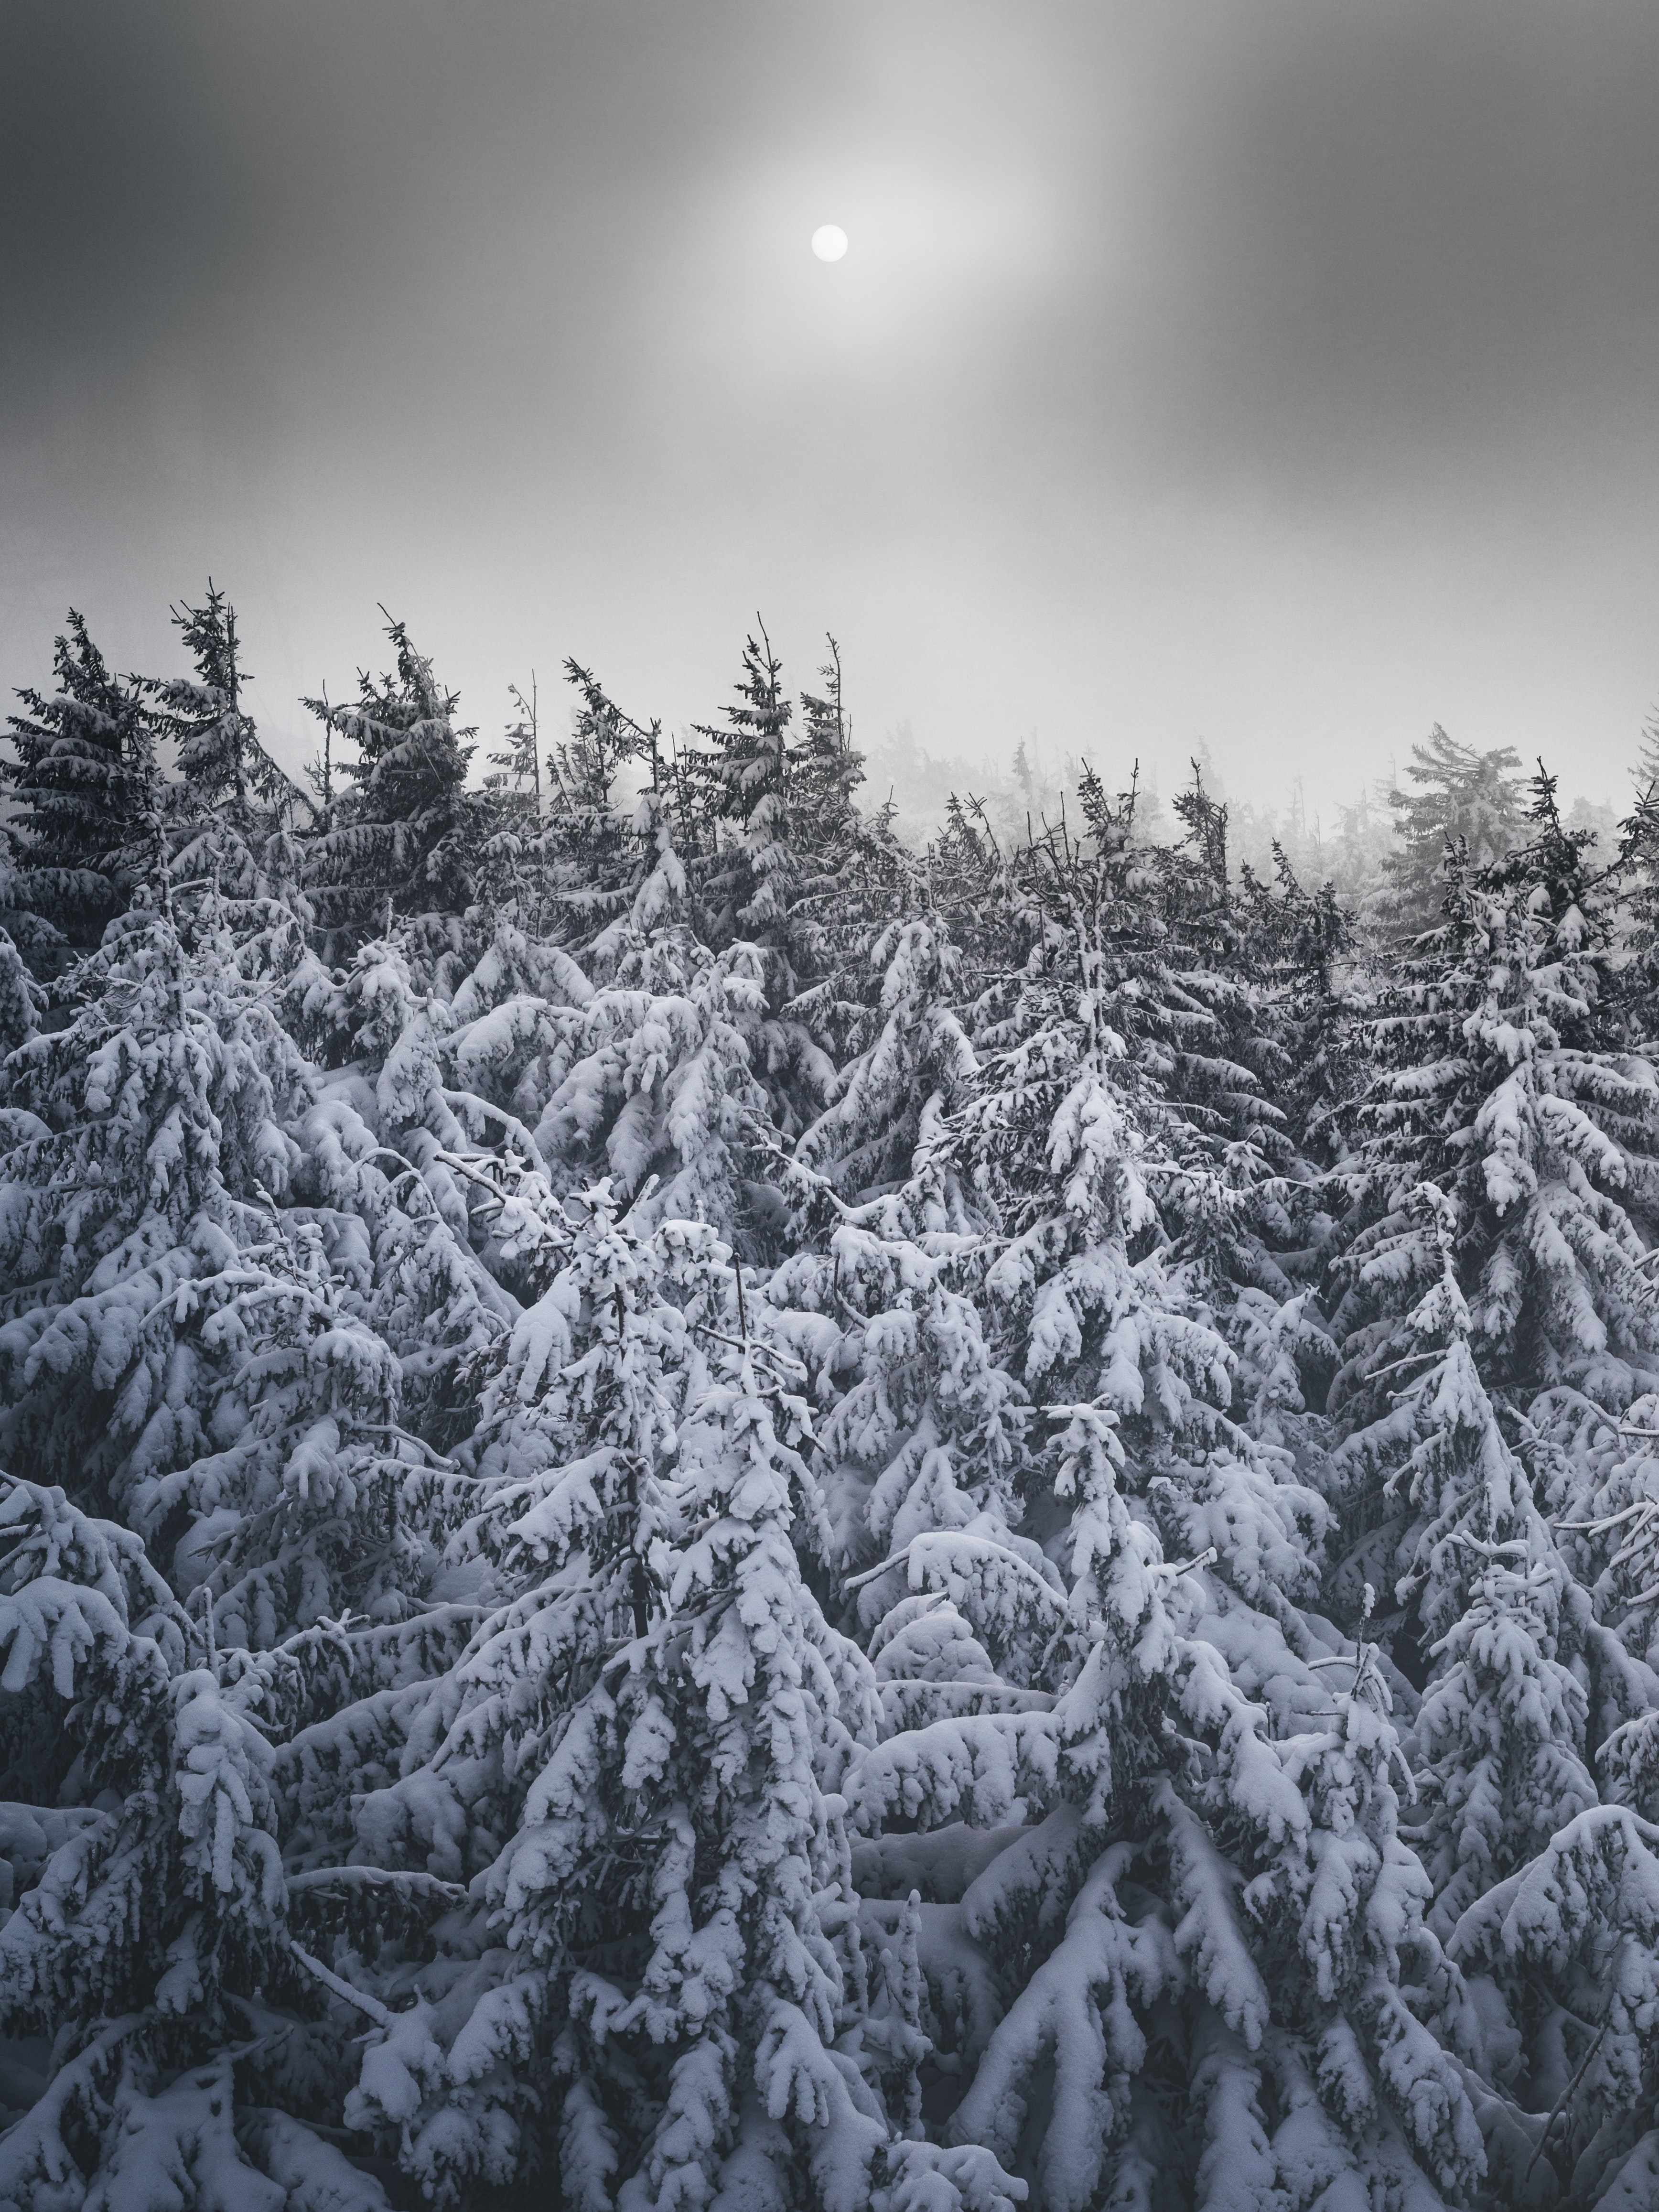 Замерзшие деревья холодным зимним днем · бесплатная фотография